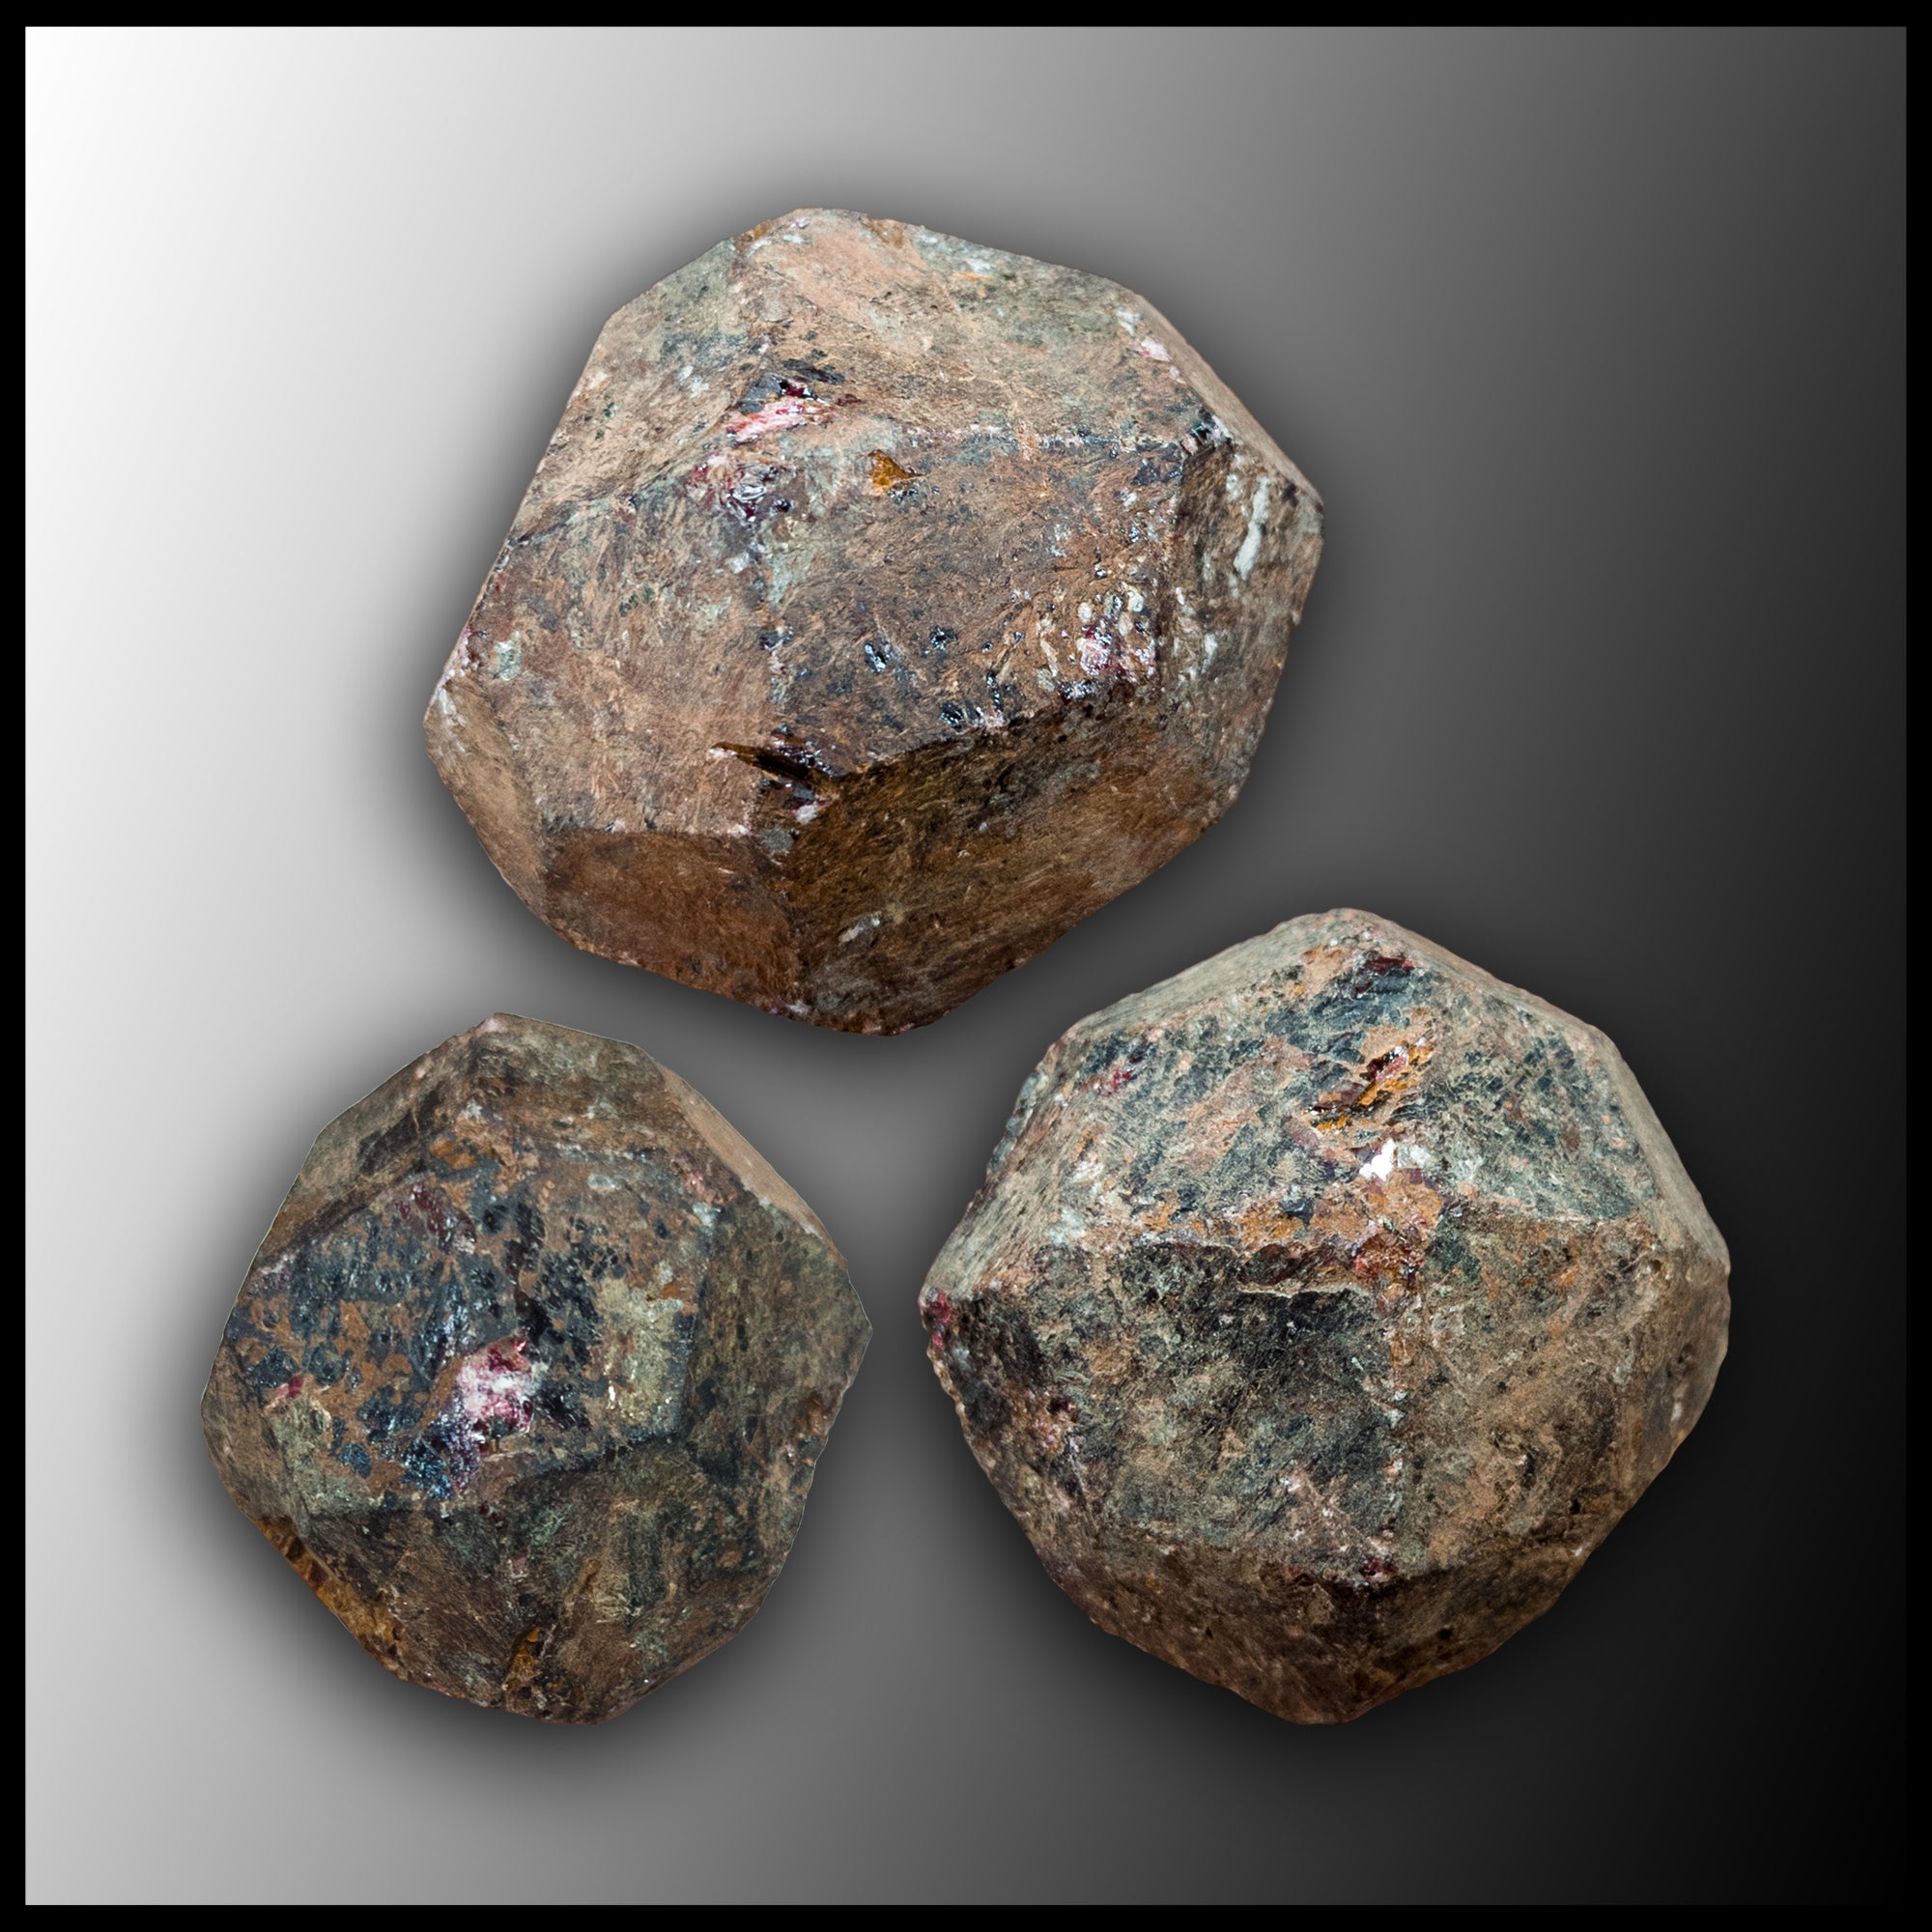 Raw Garnet Crystal Natural Rough Gemstone - One Medium Stone – Crystal  Gemstone Shop